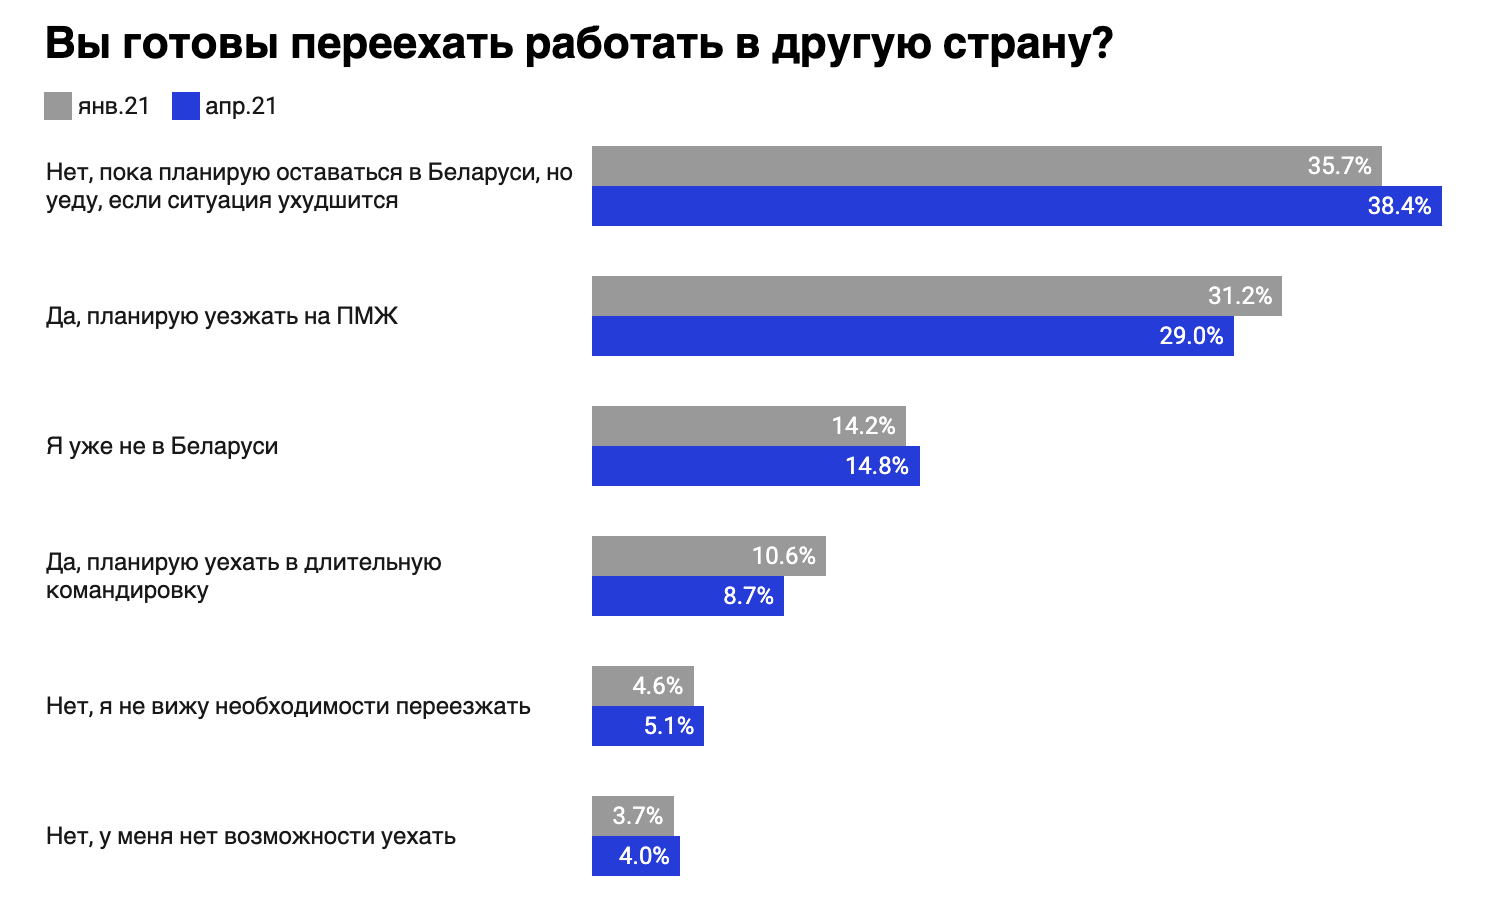 Сми2 новости россии украины новостной агрегатор. Какой канал на втором месте по популярности.